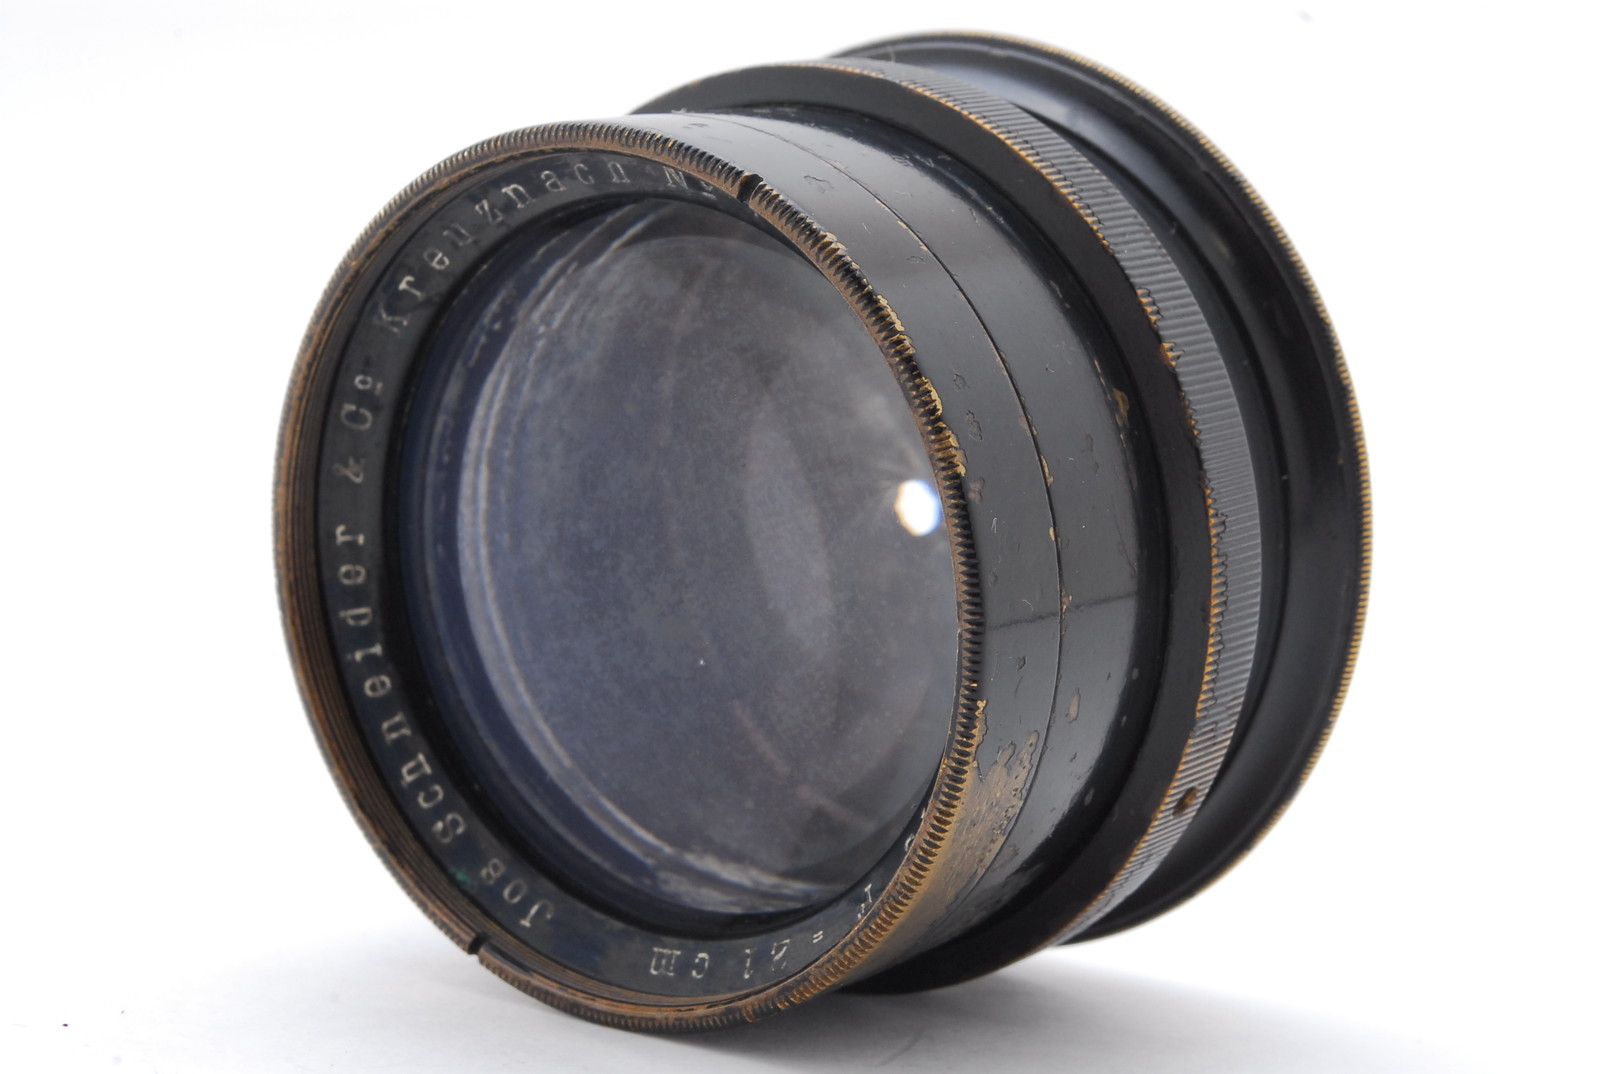 PROMOTION. EXC++++ Jos Schneider kreuznach XENAR 21cm 210mm f/4.5 Vintage Lens from Japan